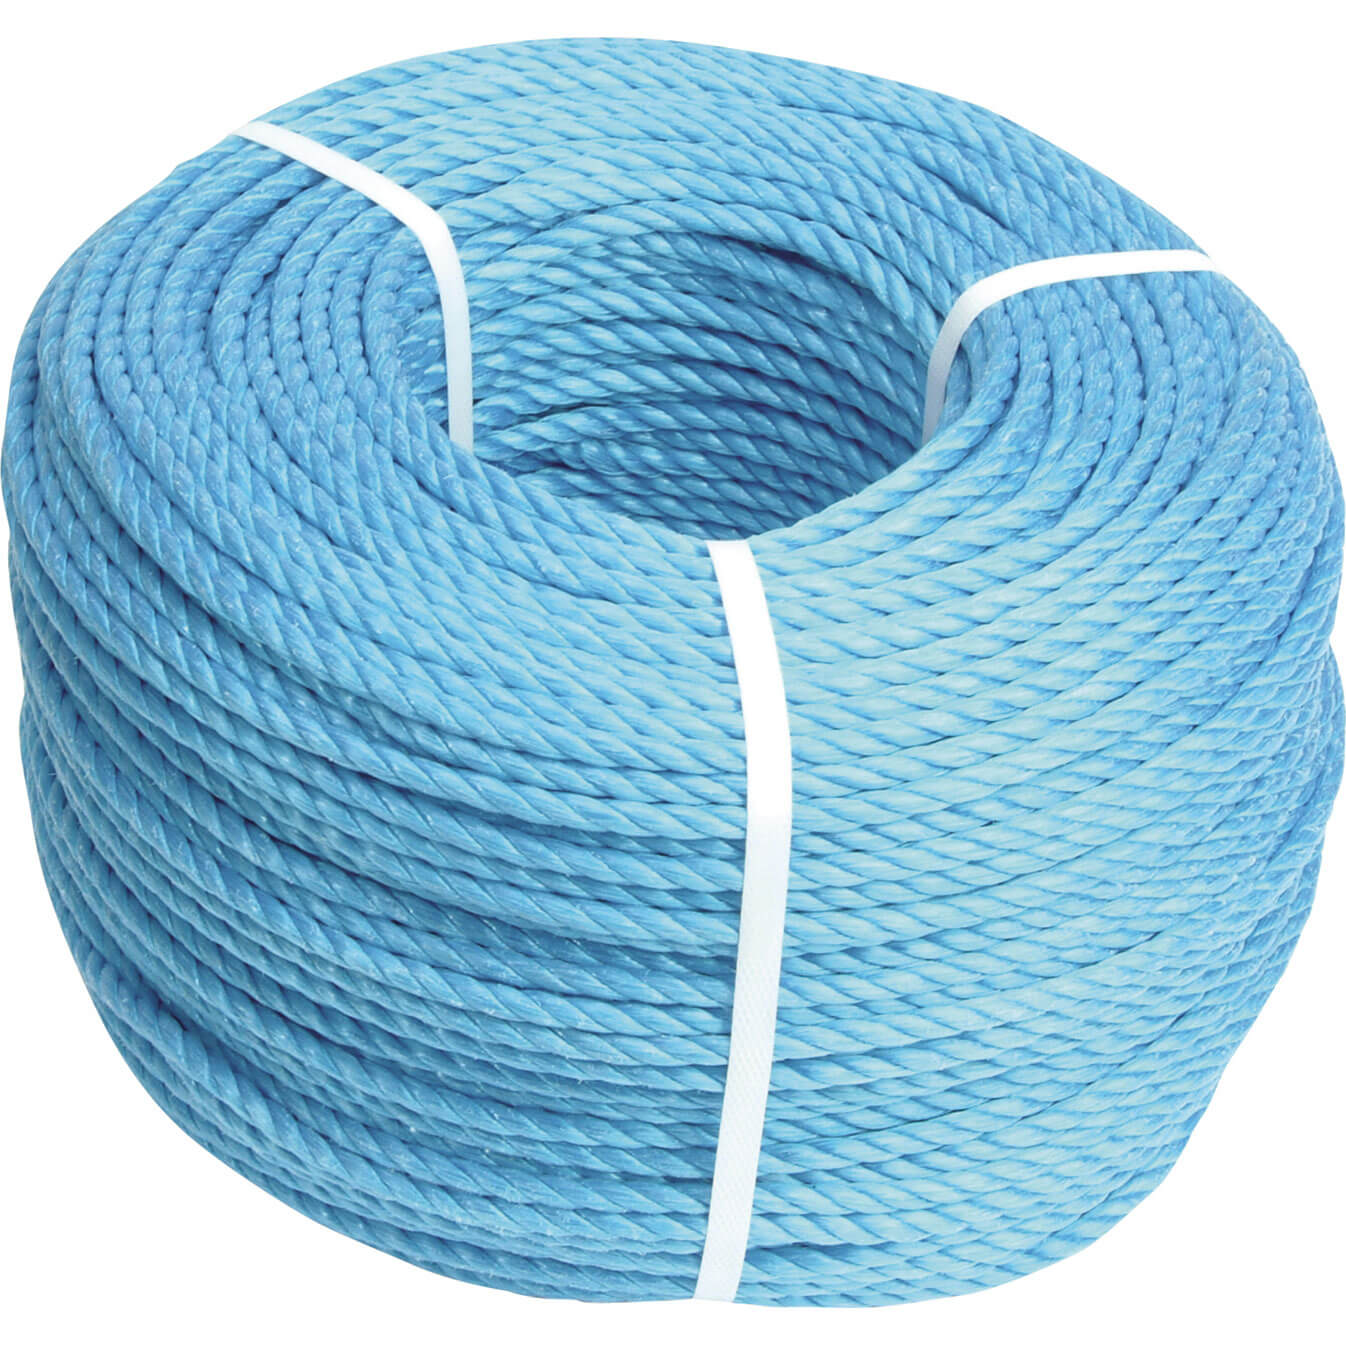 Image of Faithfull Blue Poly Rope 10mm 30m